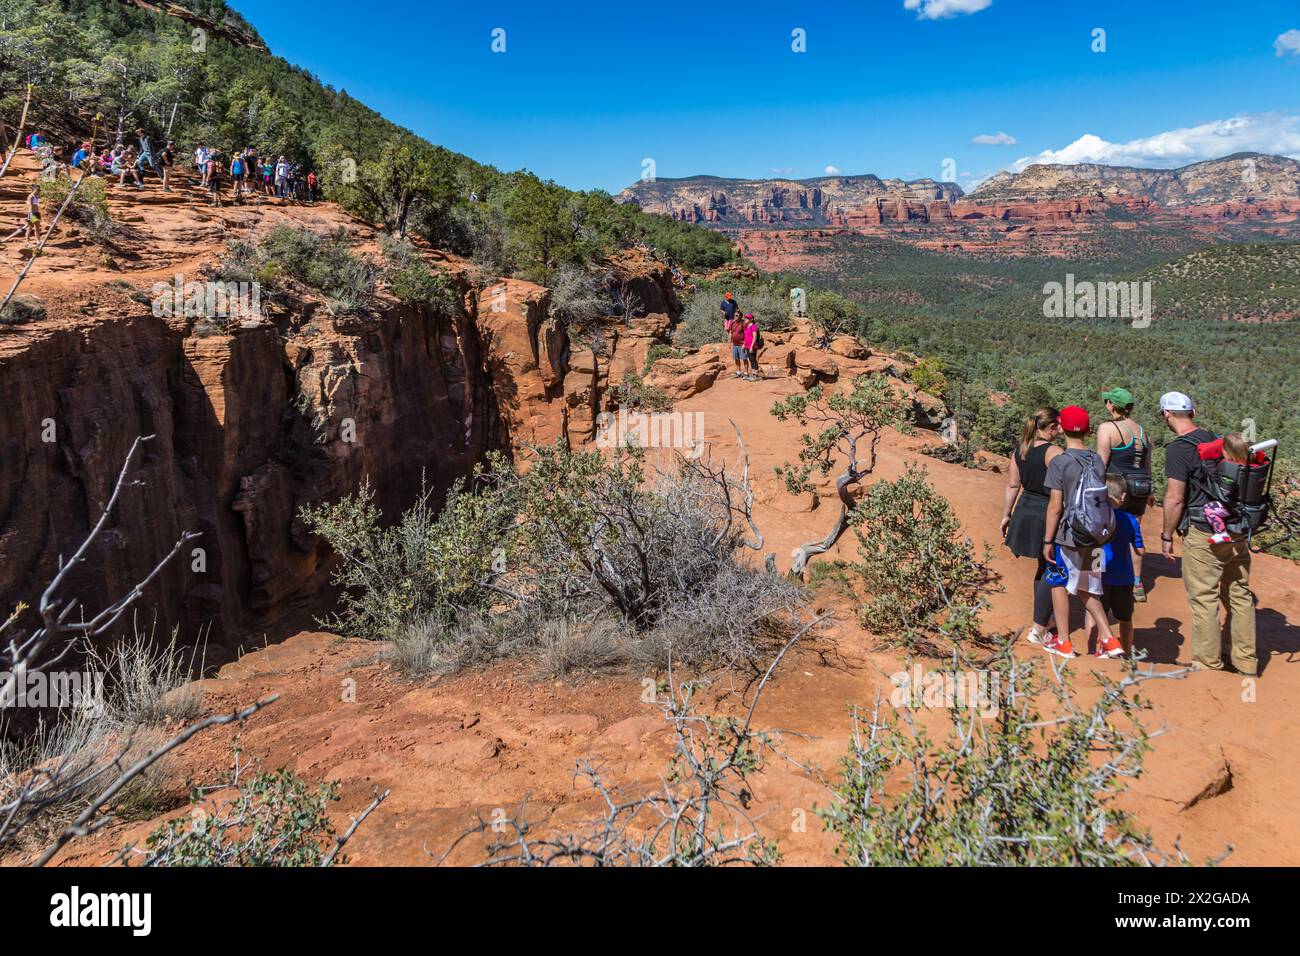 Randonneurs en ligne pour se rendre sur la formation rocheuse de Devil's Bridge pour prendre des photos à Sedona, Arizona Banque D'Images